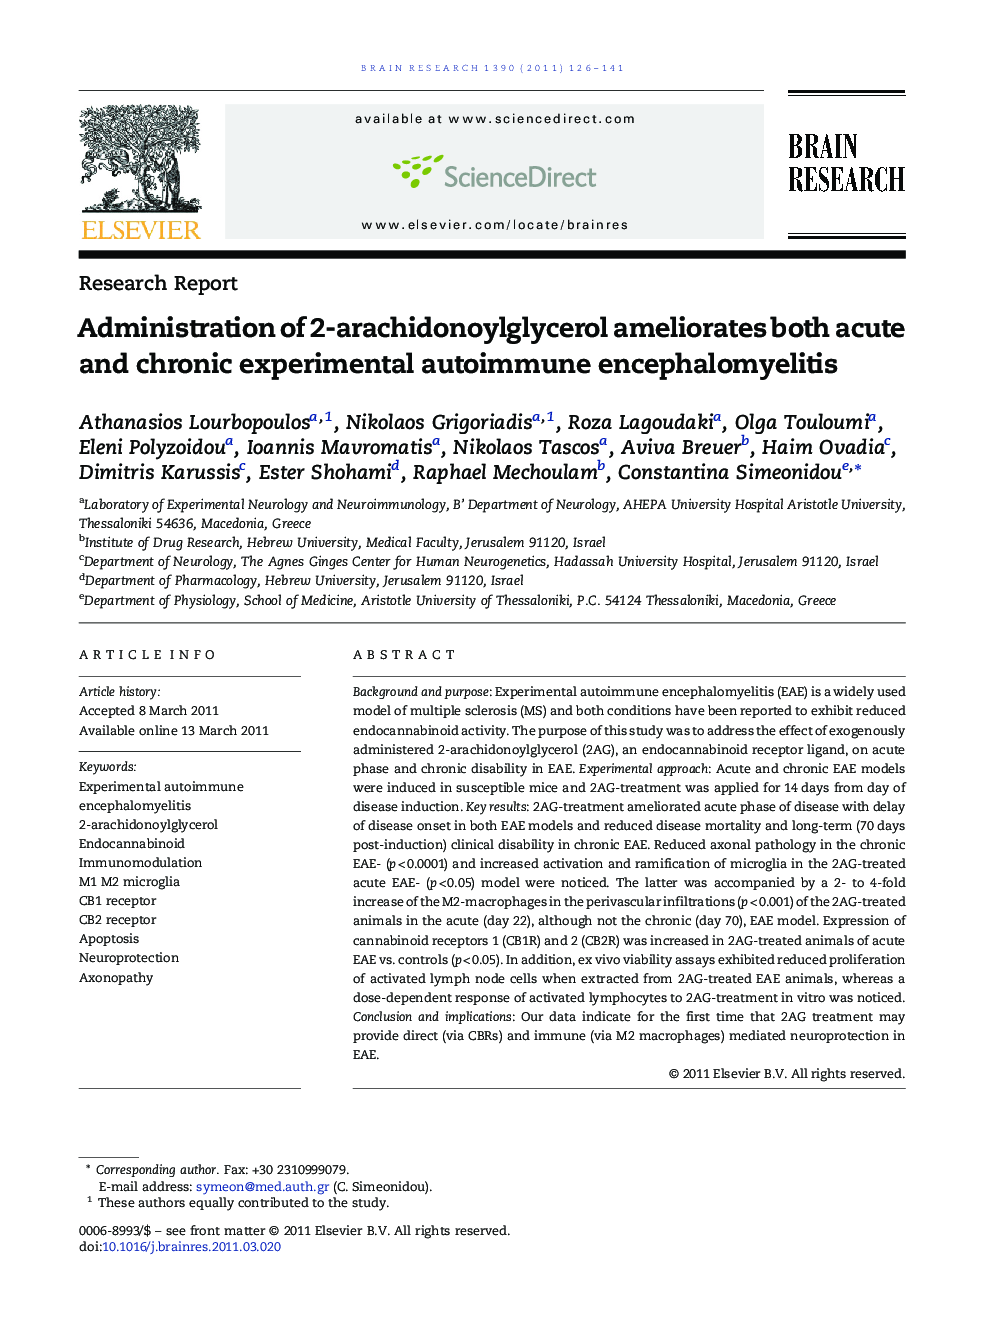 Administration of 2-arachidonoylglycerol ameliorates both acute and chronic experimental autoimmune encephalomyelitis